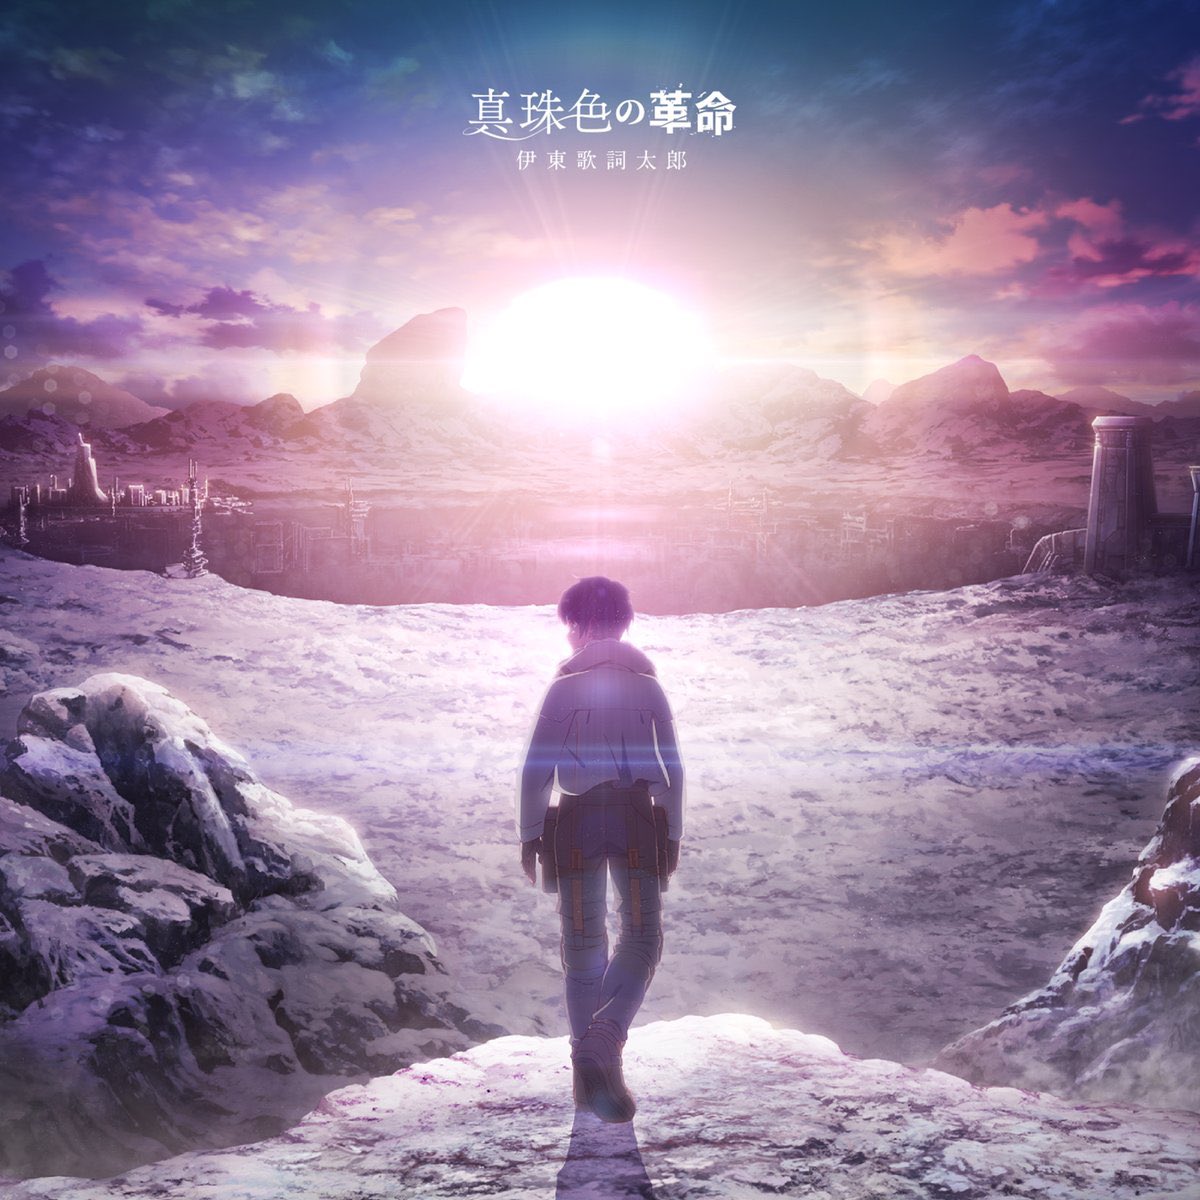 Cover for『Kashitaro Ito - Shinjuiro no Kakumei』from the release『Shinjuiro no Kakumei』